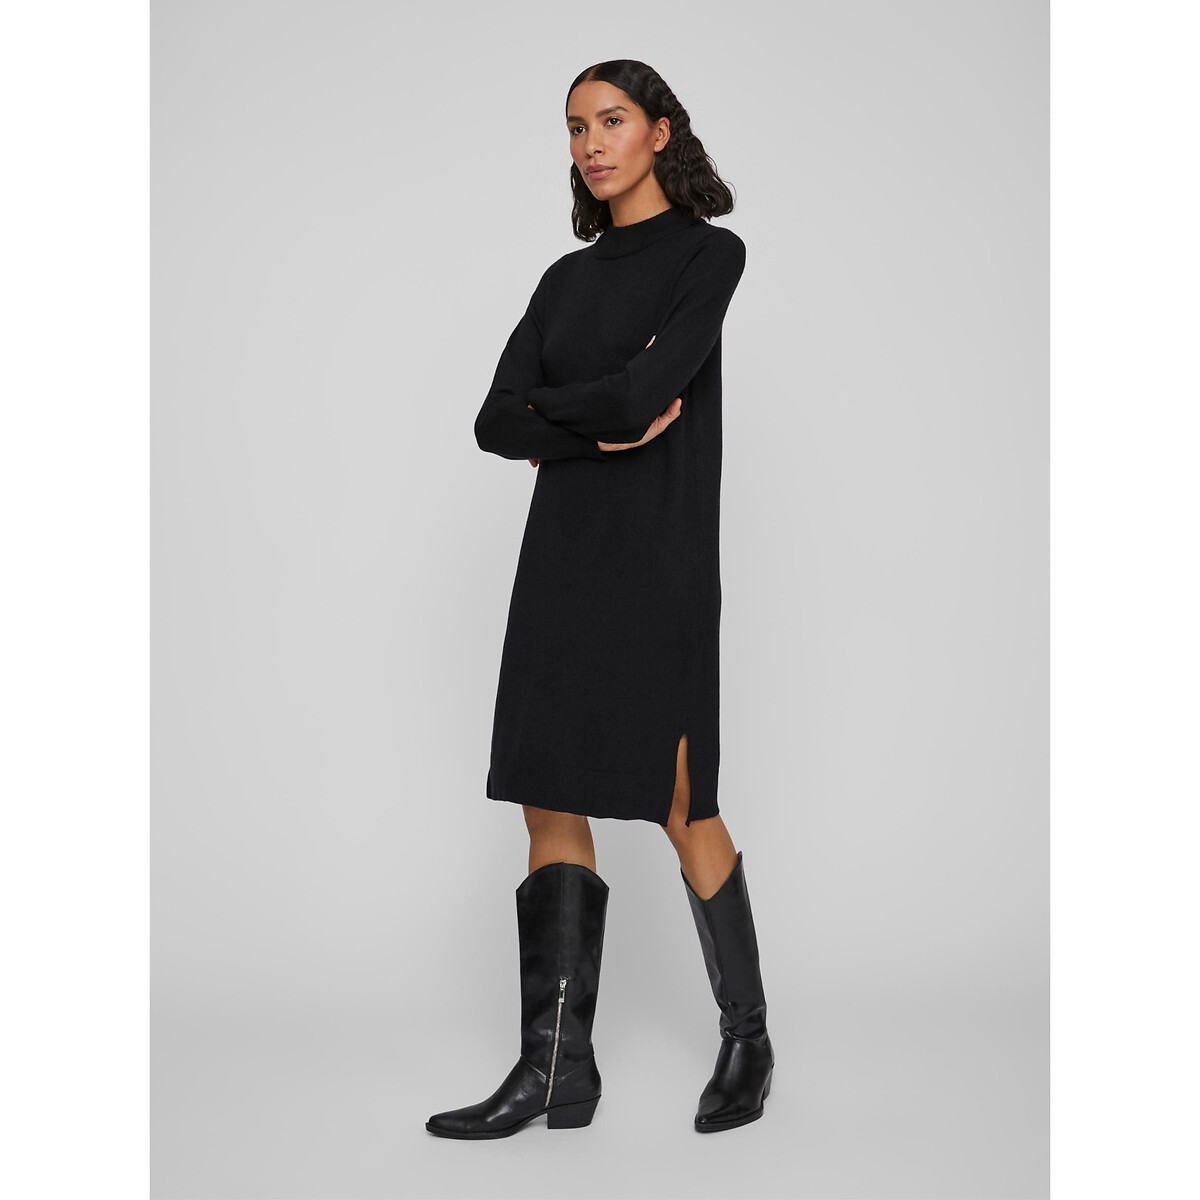 Платье-пуловер VILA Платье-пуловер Миди из тонкого трикотажа воротник-стойка XS черный, размер XS - фото 1